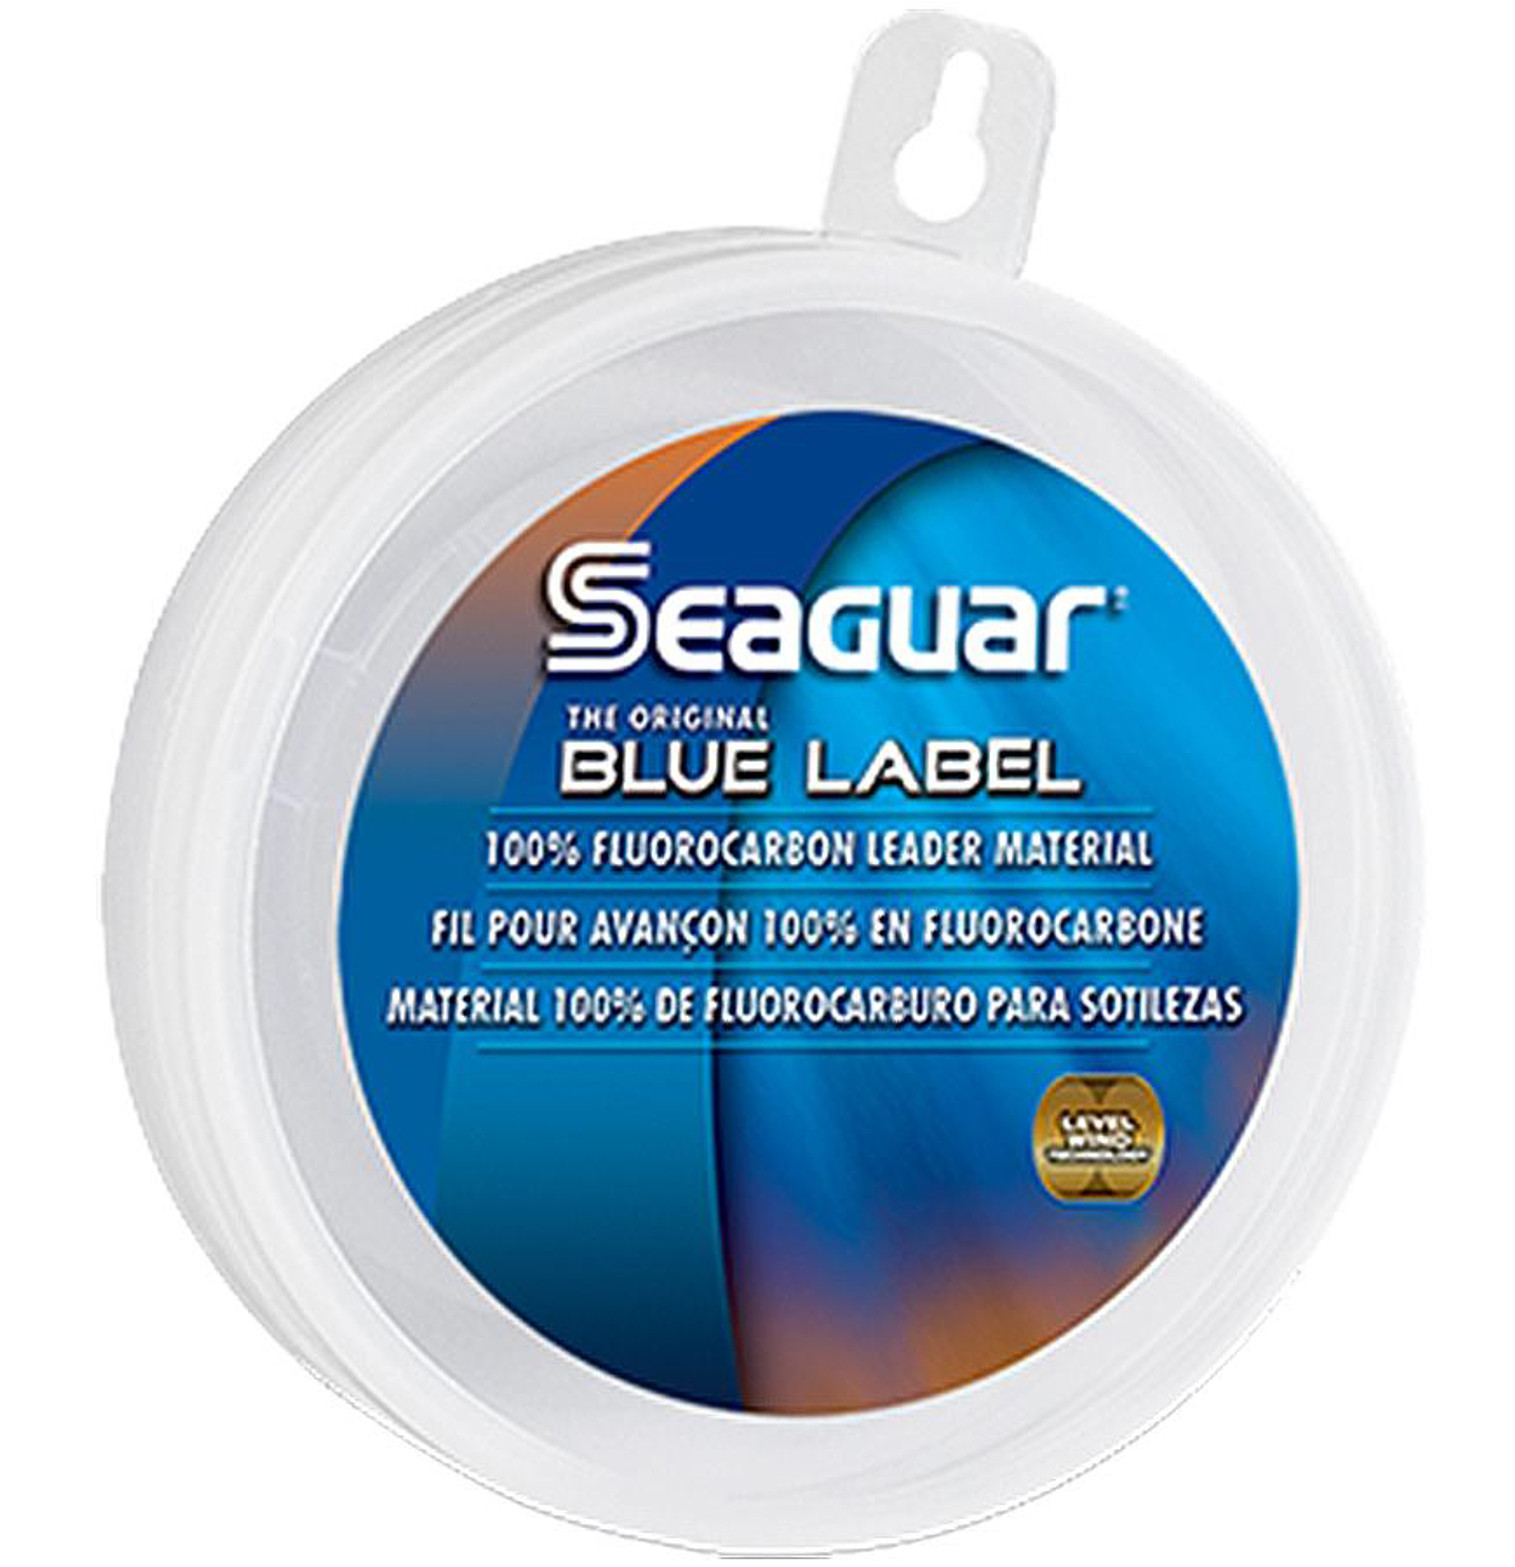 Seaguar Blue Label Fluorocarbon Leader Material (Model: 12FC25 / 12Lb 25Yds)